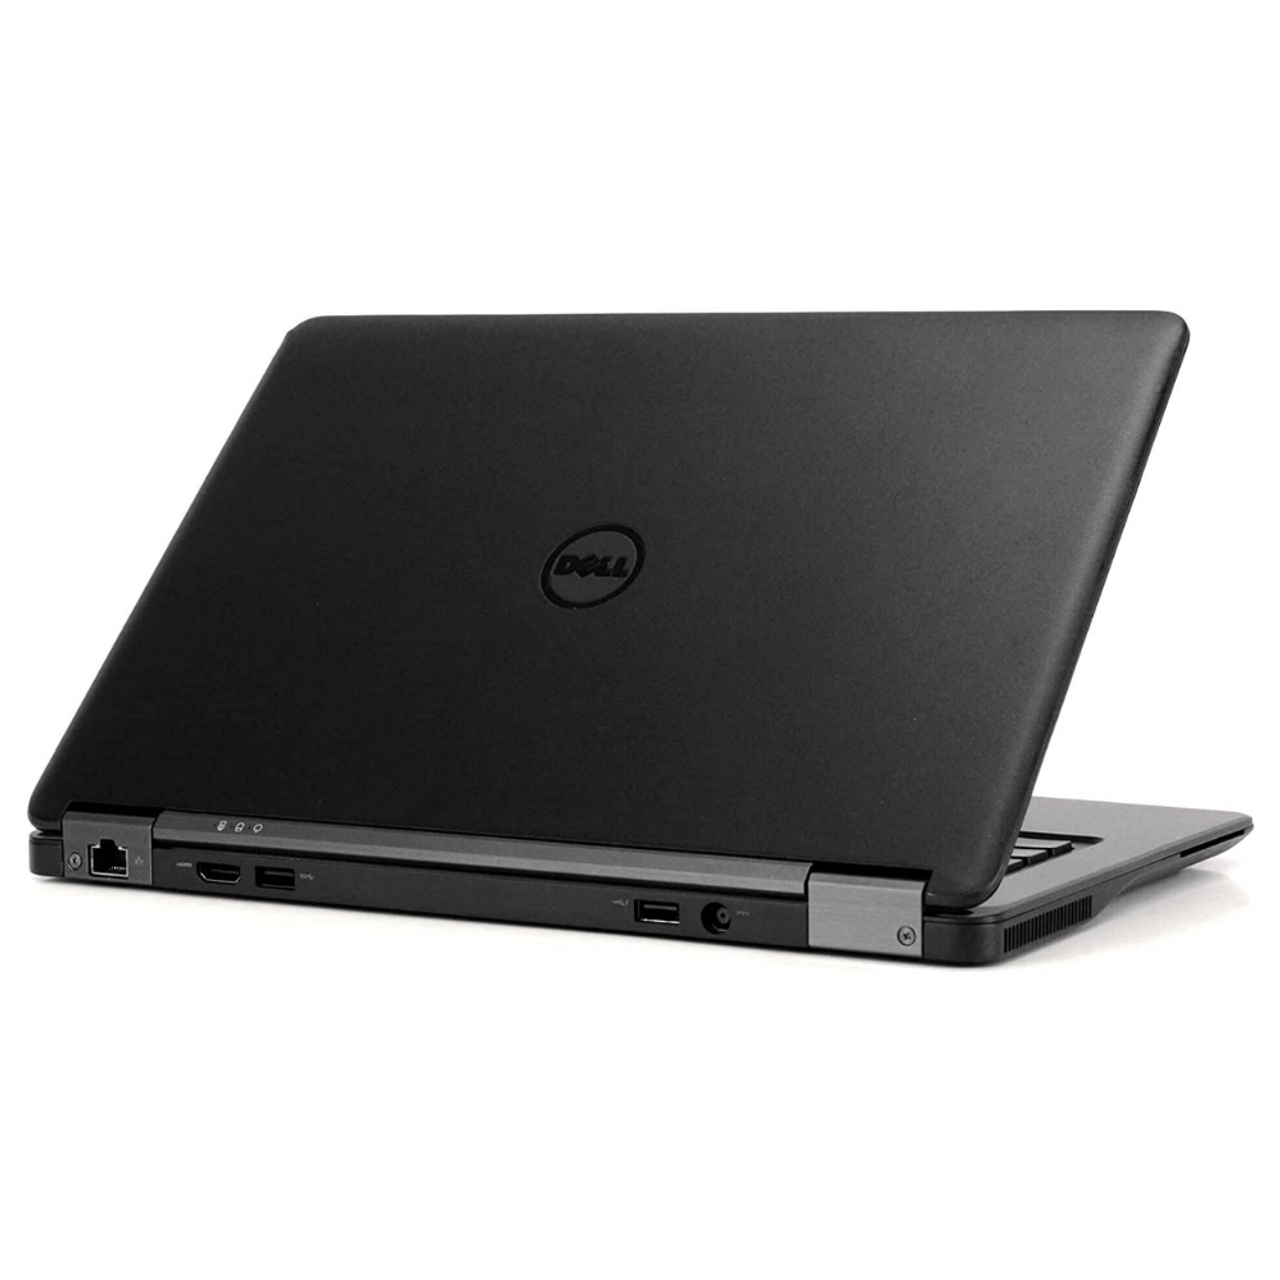 Dell Laptop E7270 Intel Core I5 Processor 8gb Ram 128gb Solid State Hard Drive Windows 10 Pro